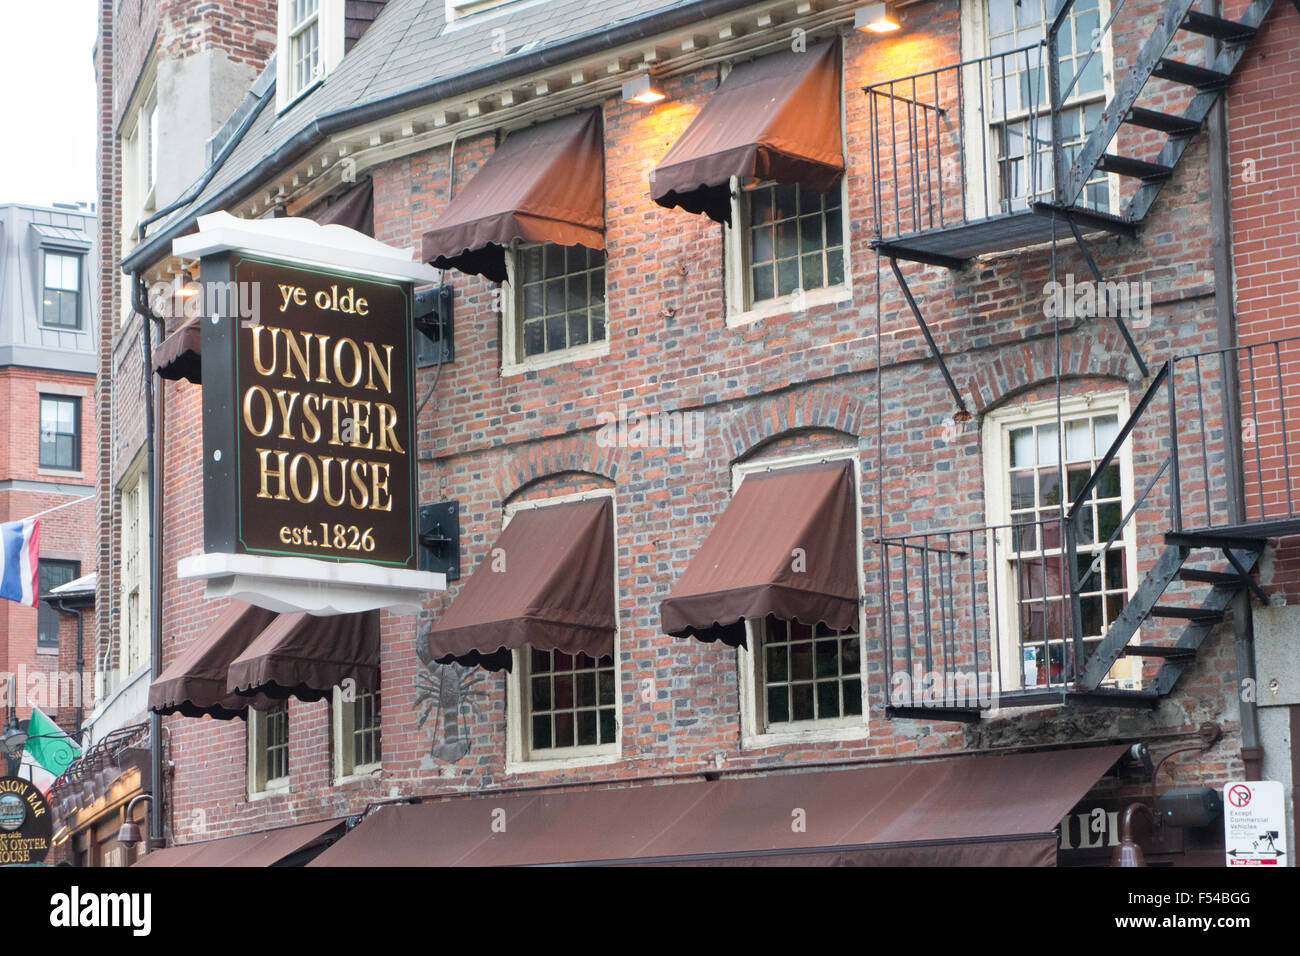 union oyster house boston Stock Photo